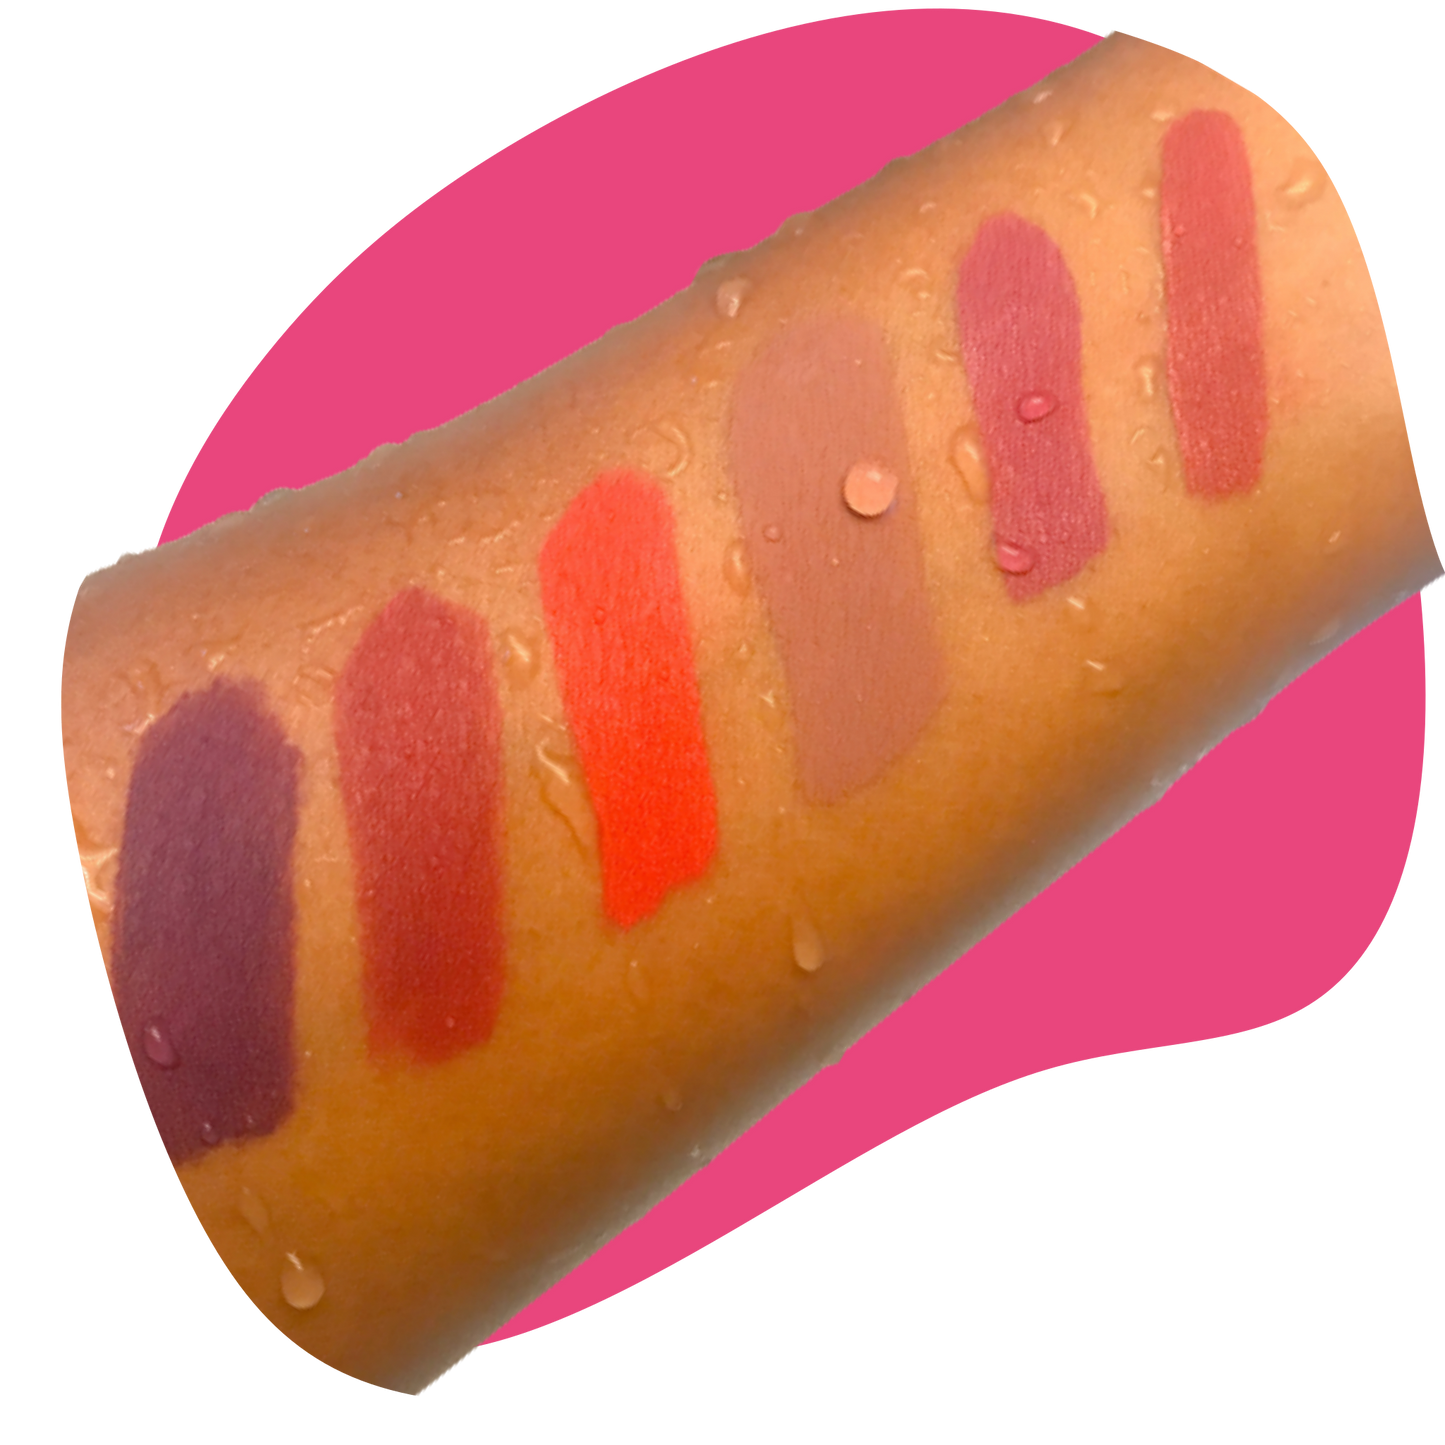 LIPSKIT - An award-winning lipstick maker